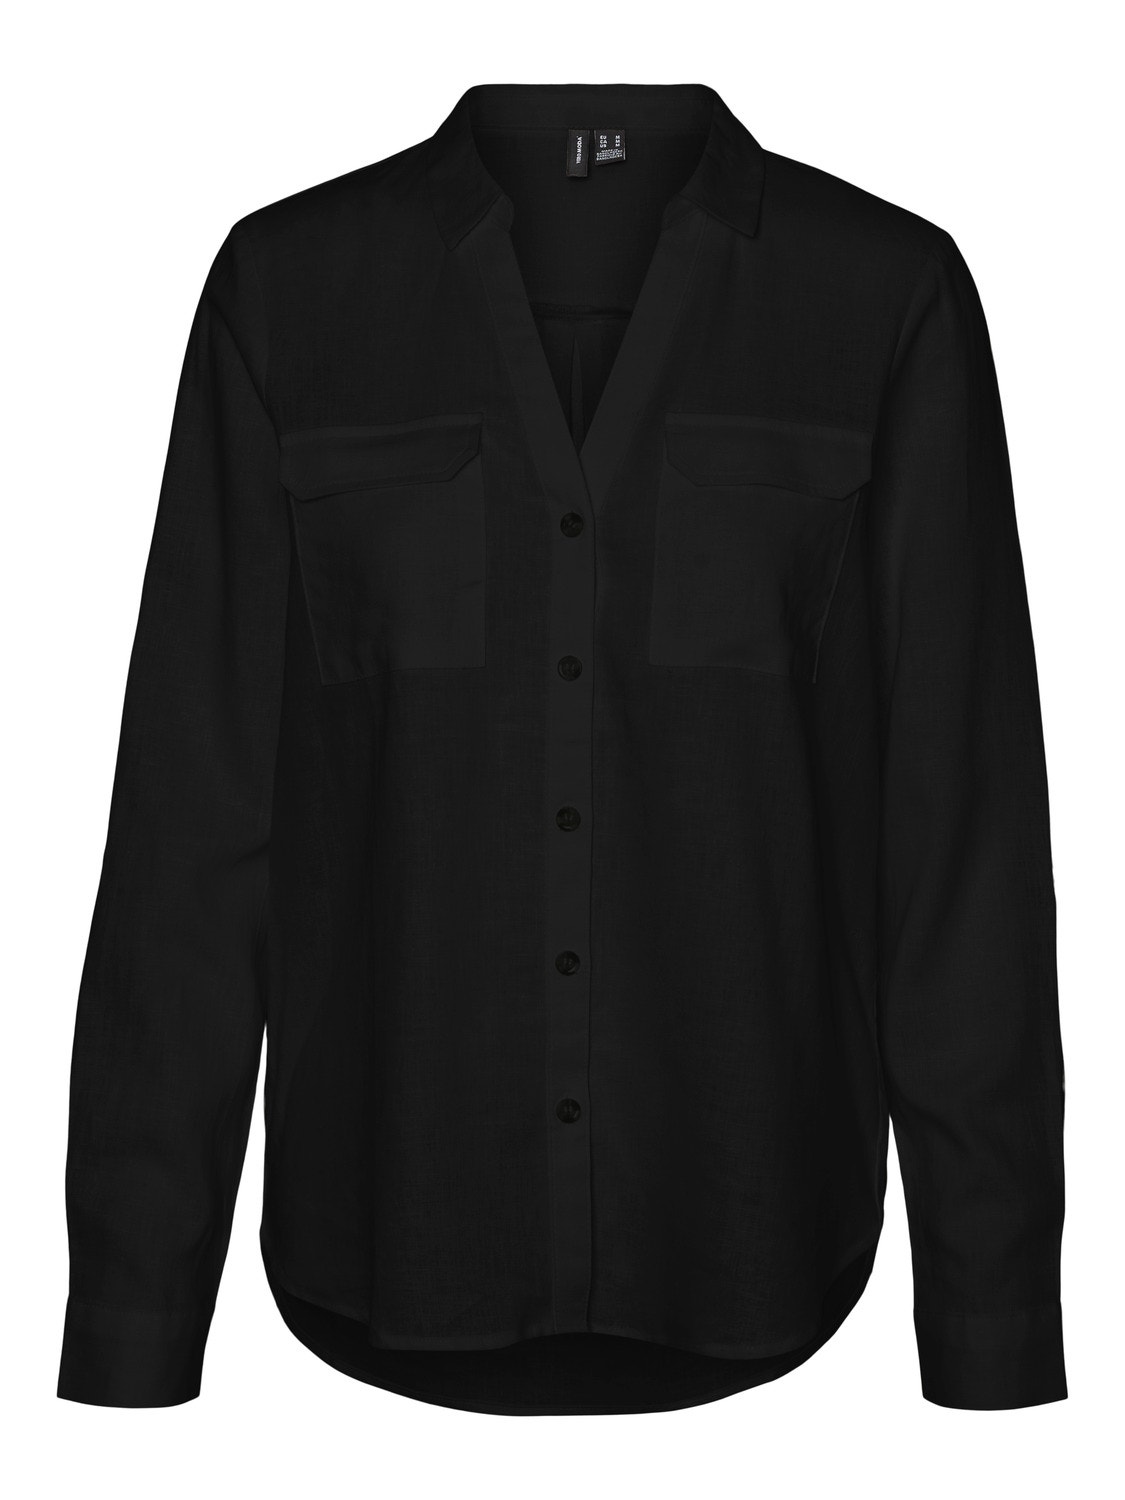 Vero Moda VMLINN Camisas -Black - 10308407